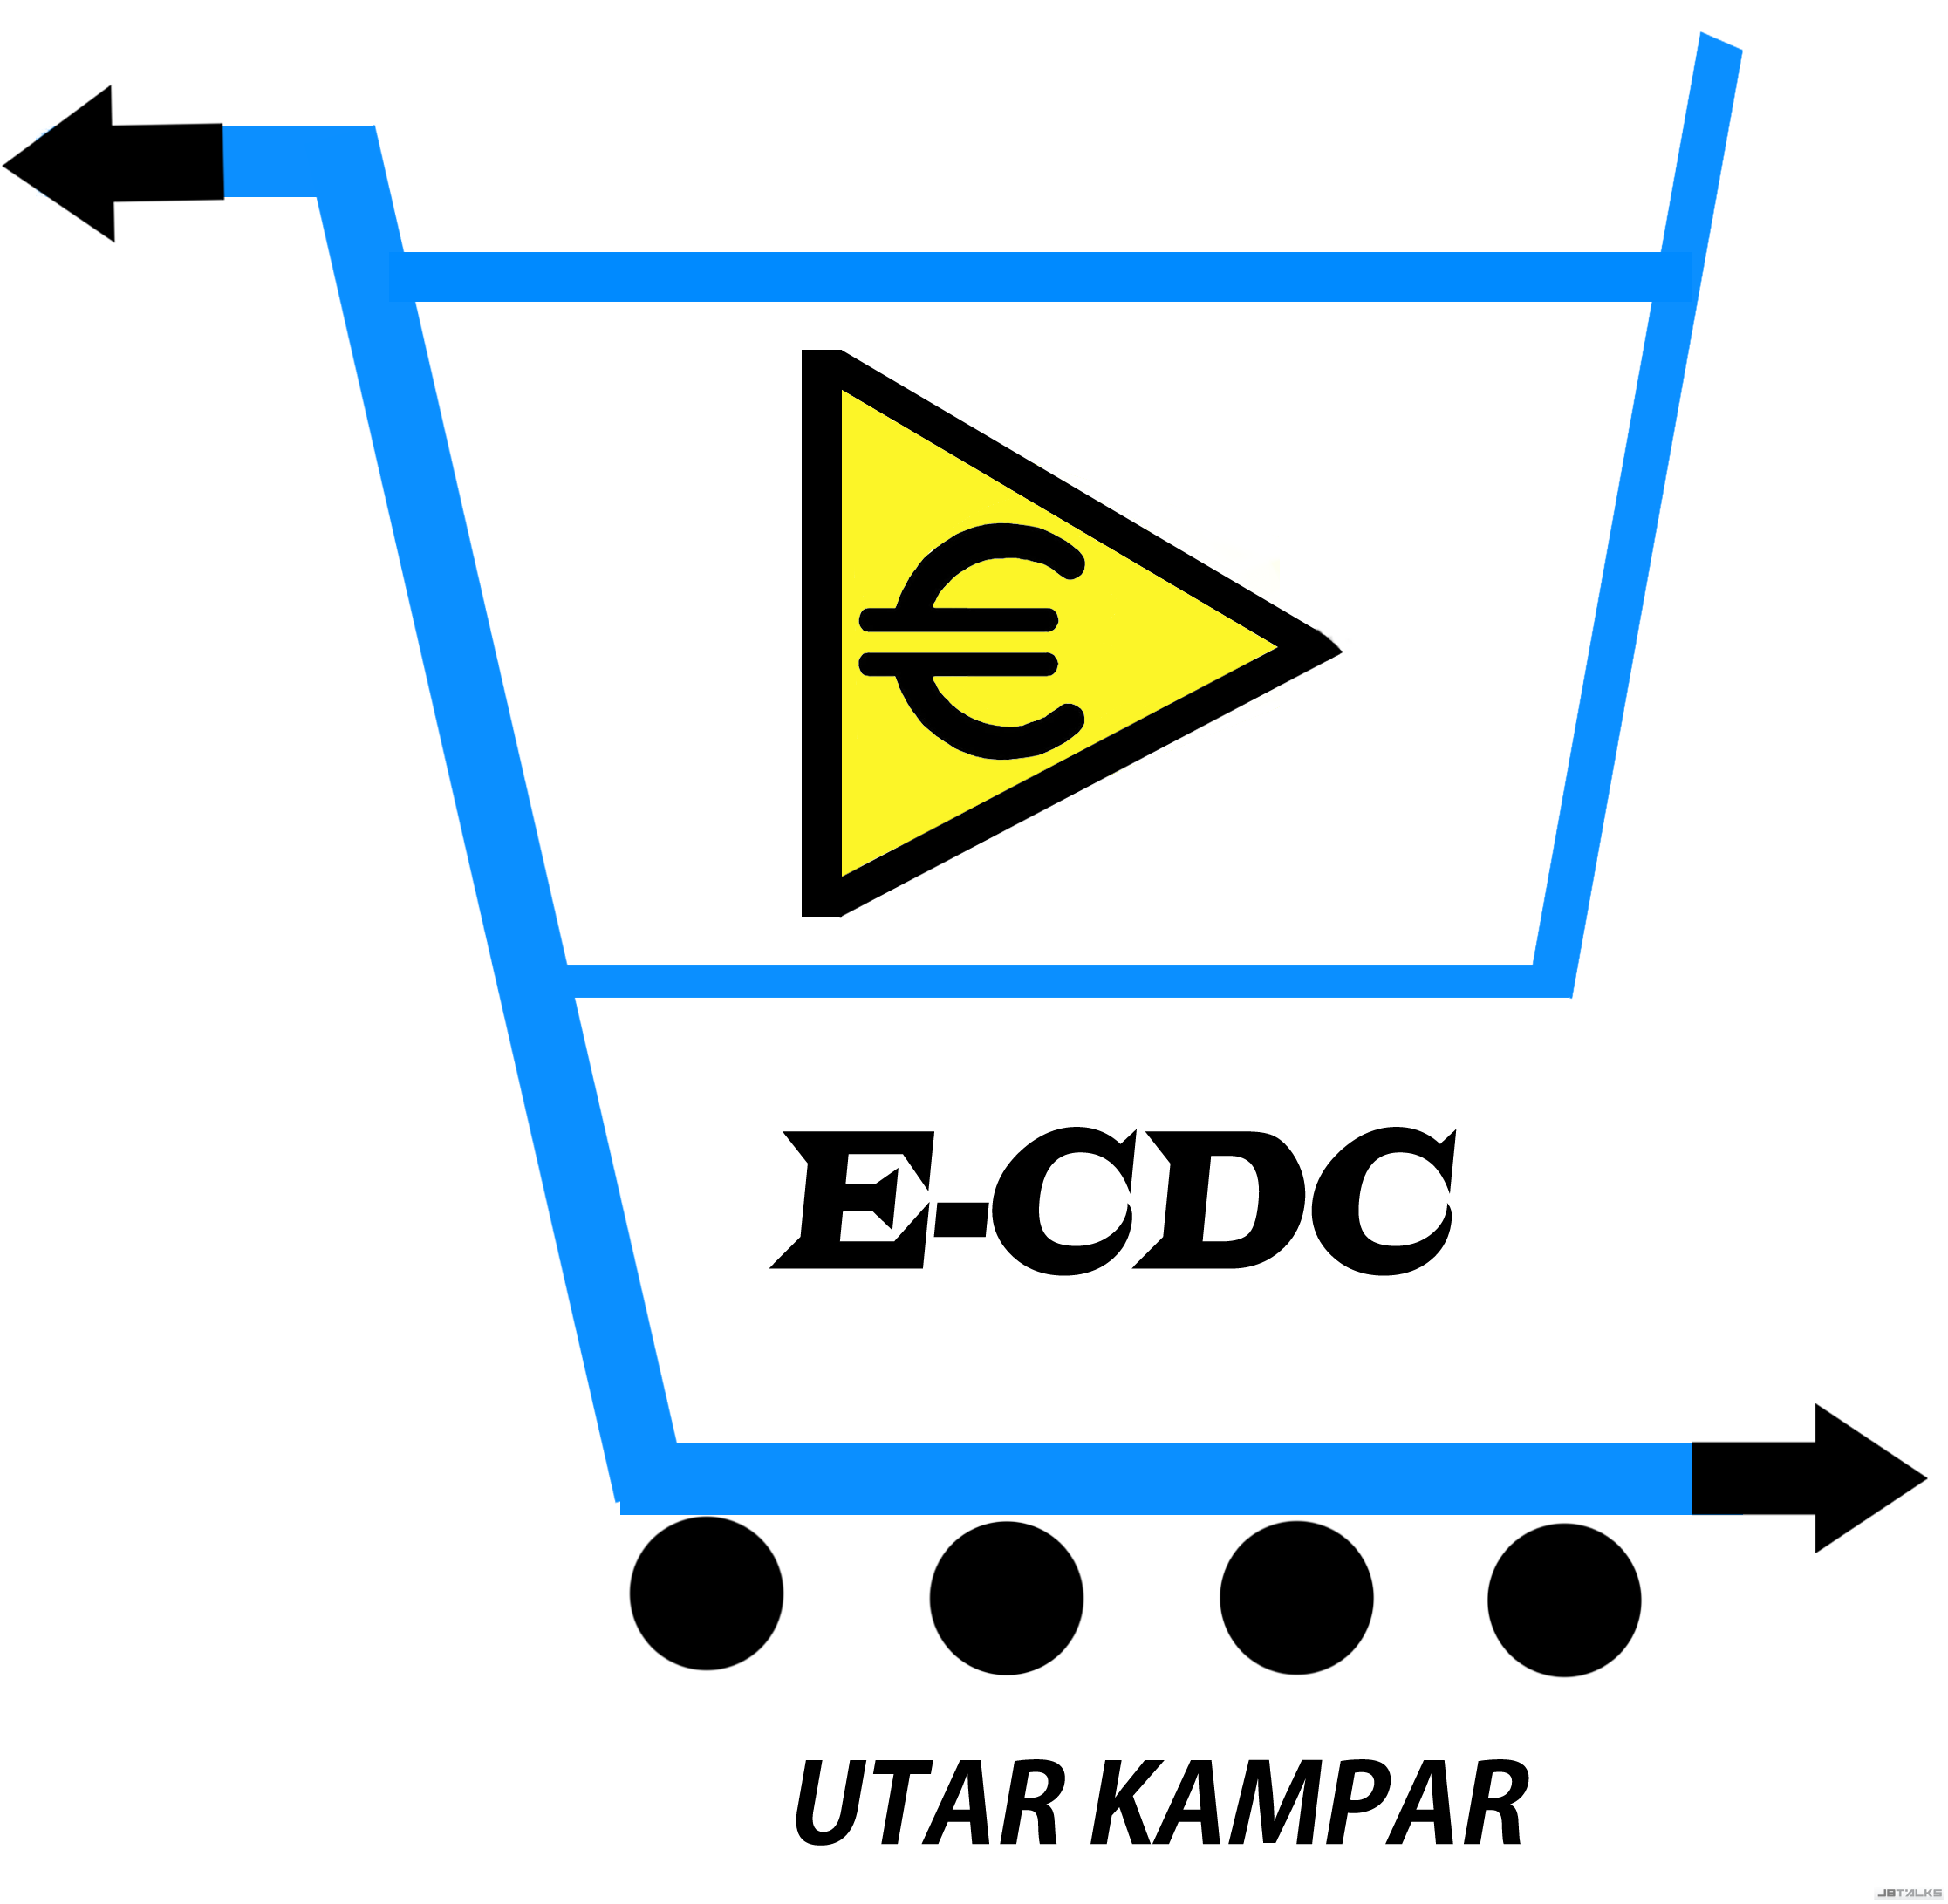 utar-kampar-e-commerce-delivery-centre.png